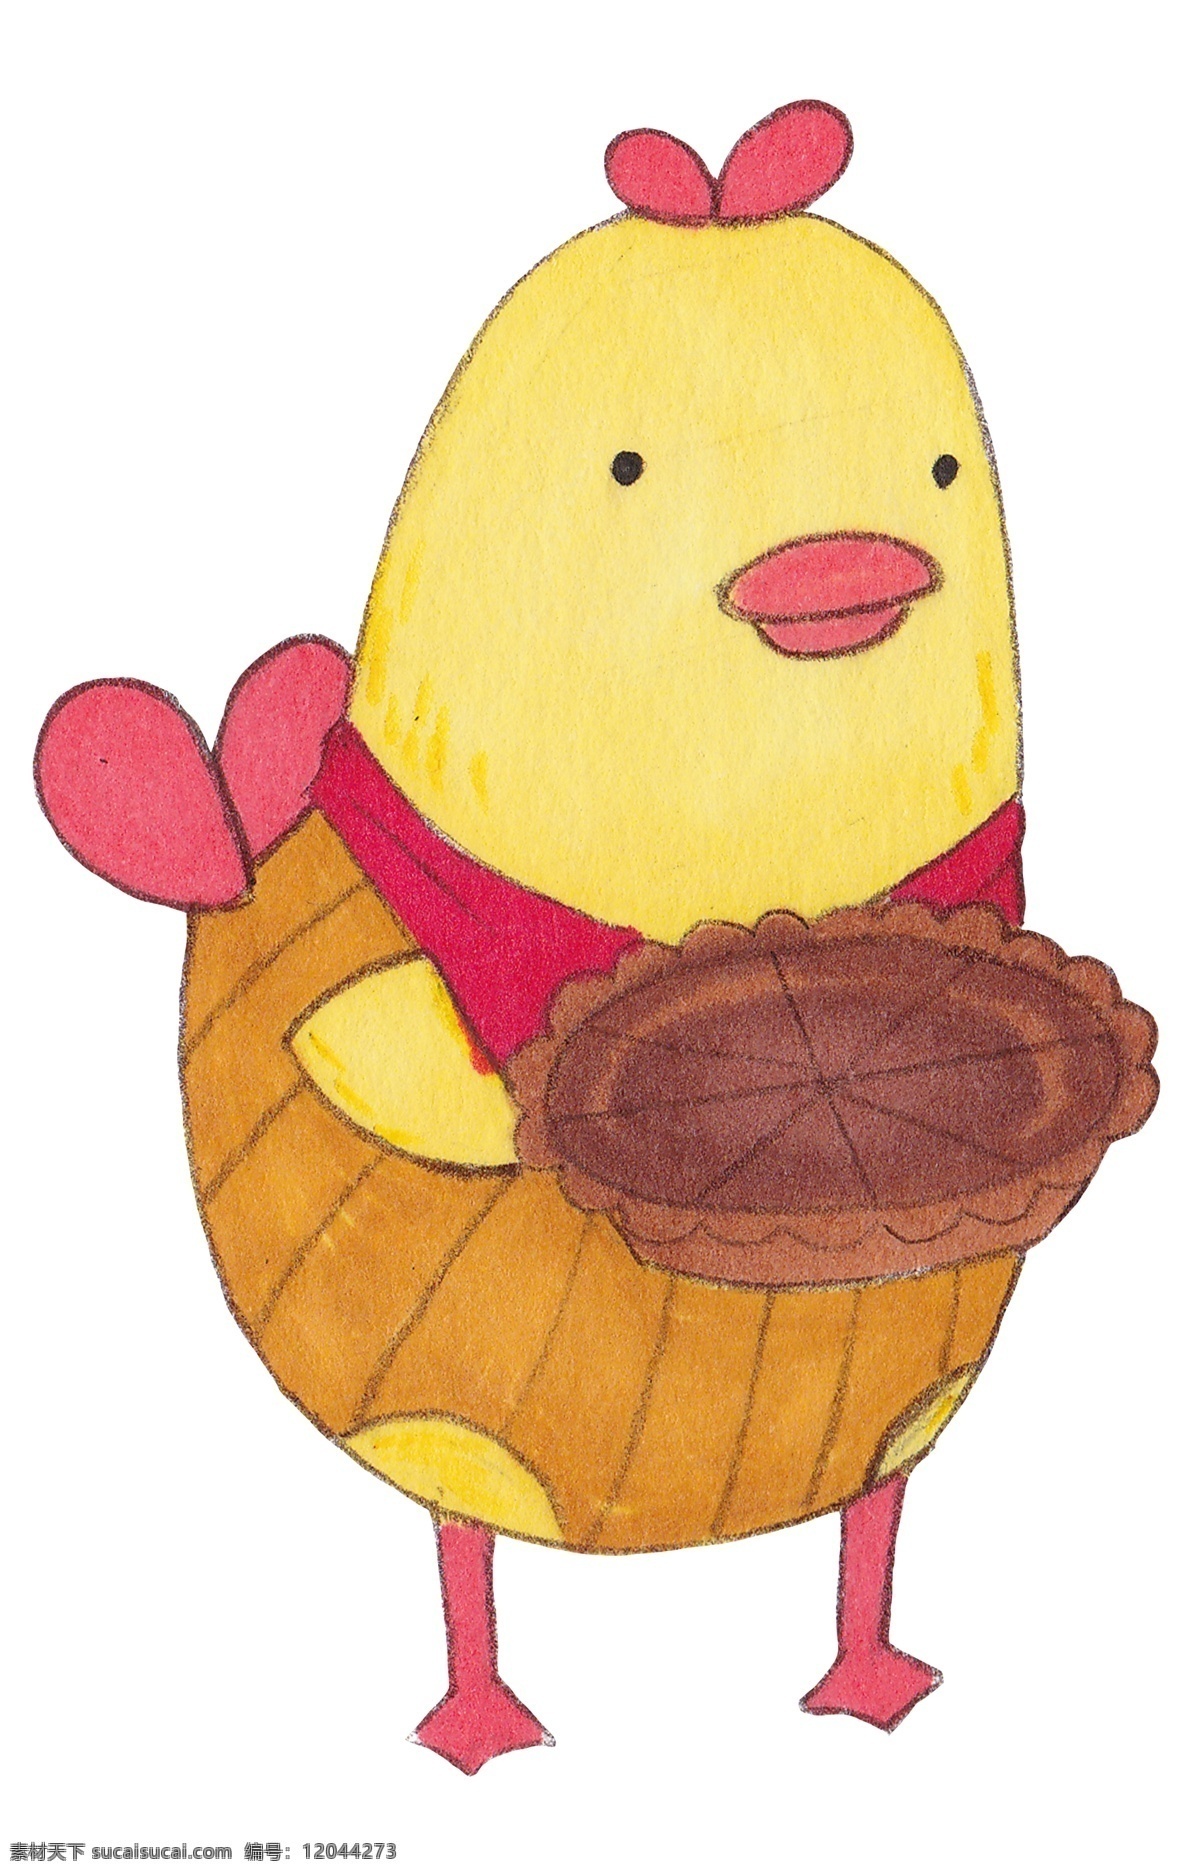 水彩 手绘 可爱 黄色 小鸡 插画 小黄鸡 鸡仔 水彩可爱小鸡 水彩手绘 可爱黄色小鸡 童话动物 小动物